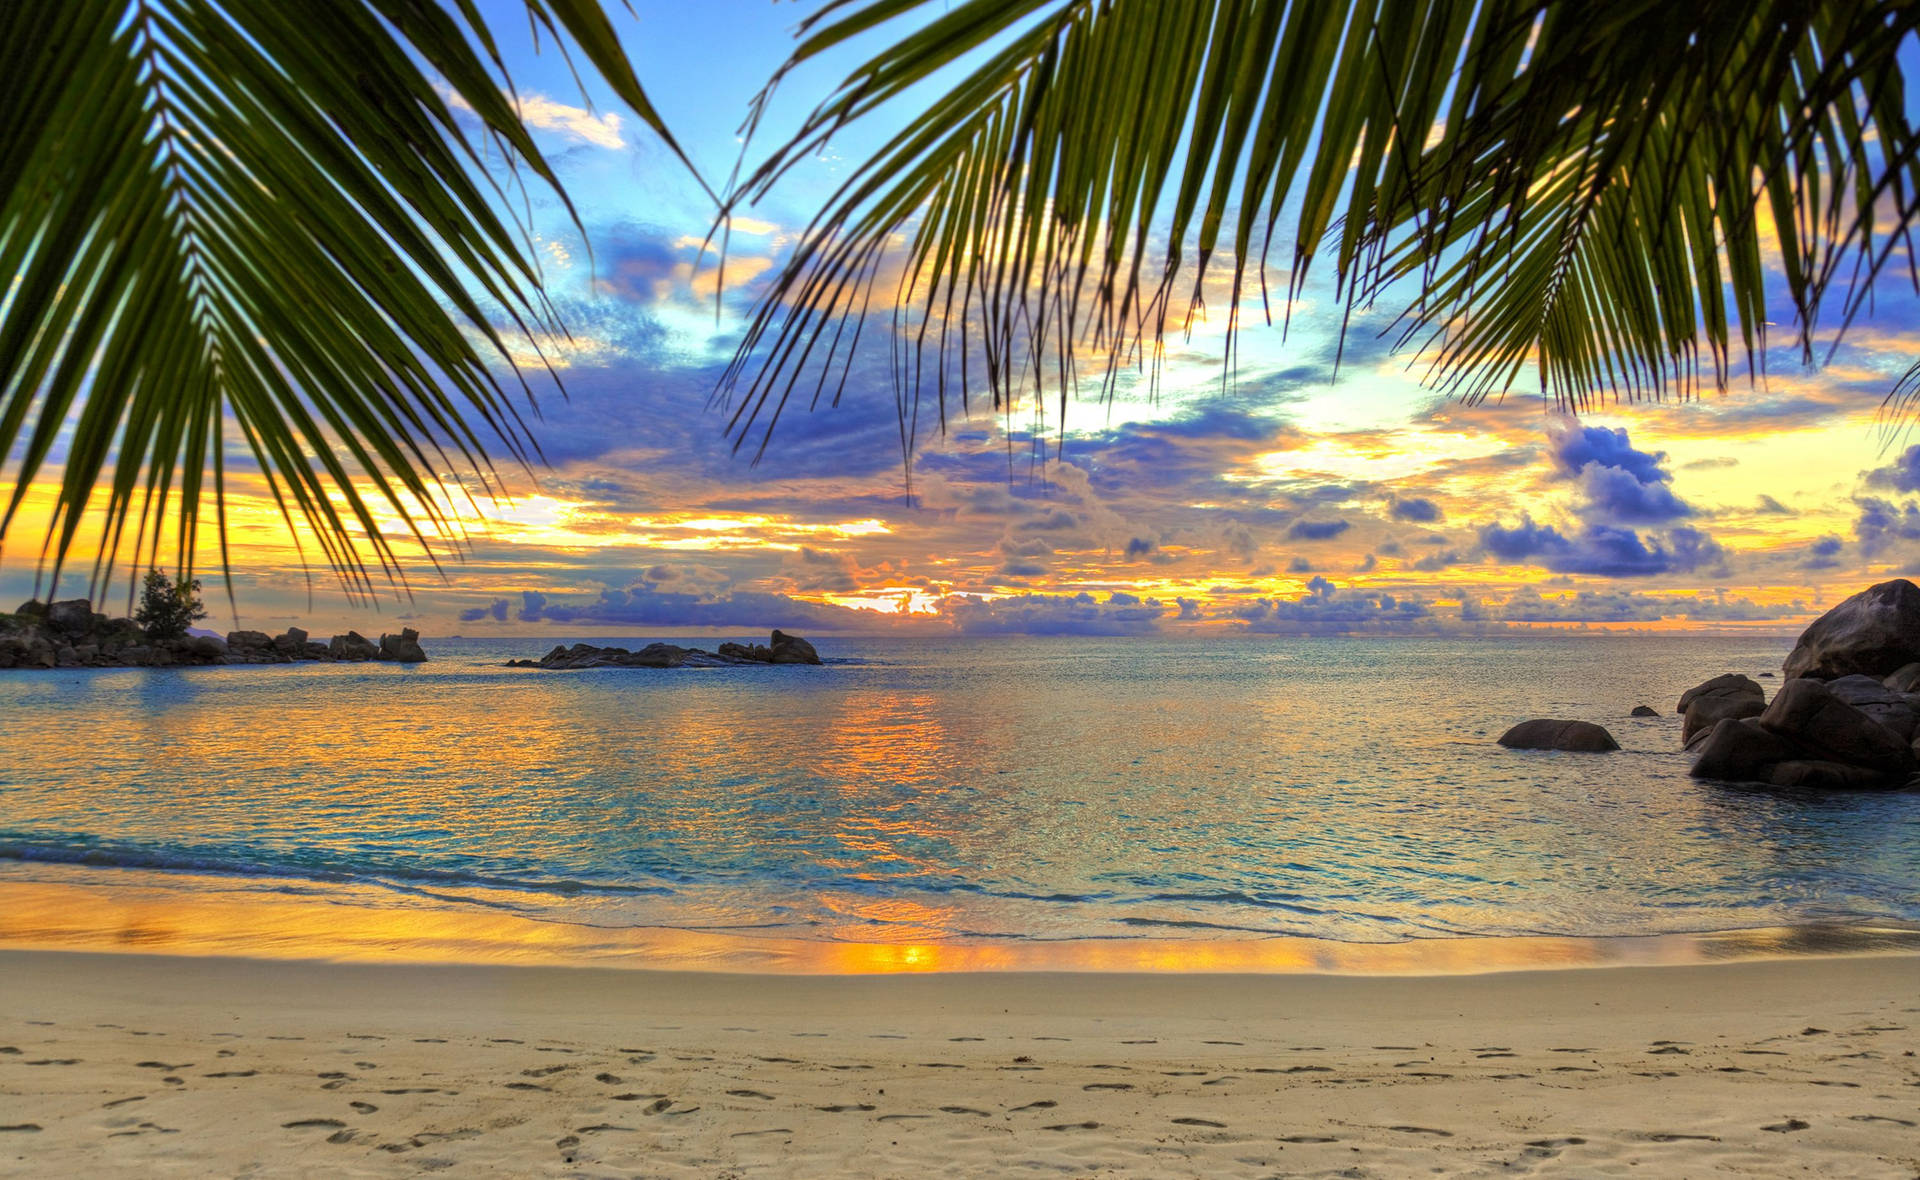 Friedlicherund Wunderschöner Strand Bei Sonnenuntergang Wallpaper